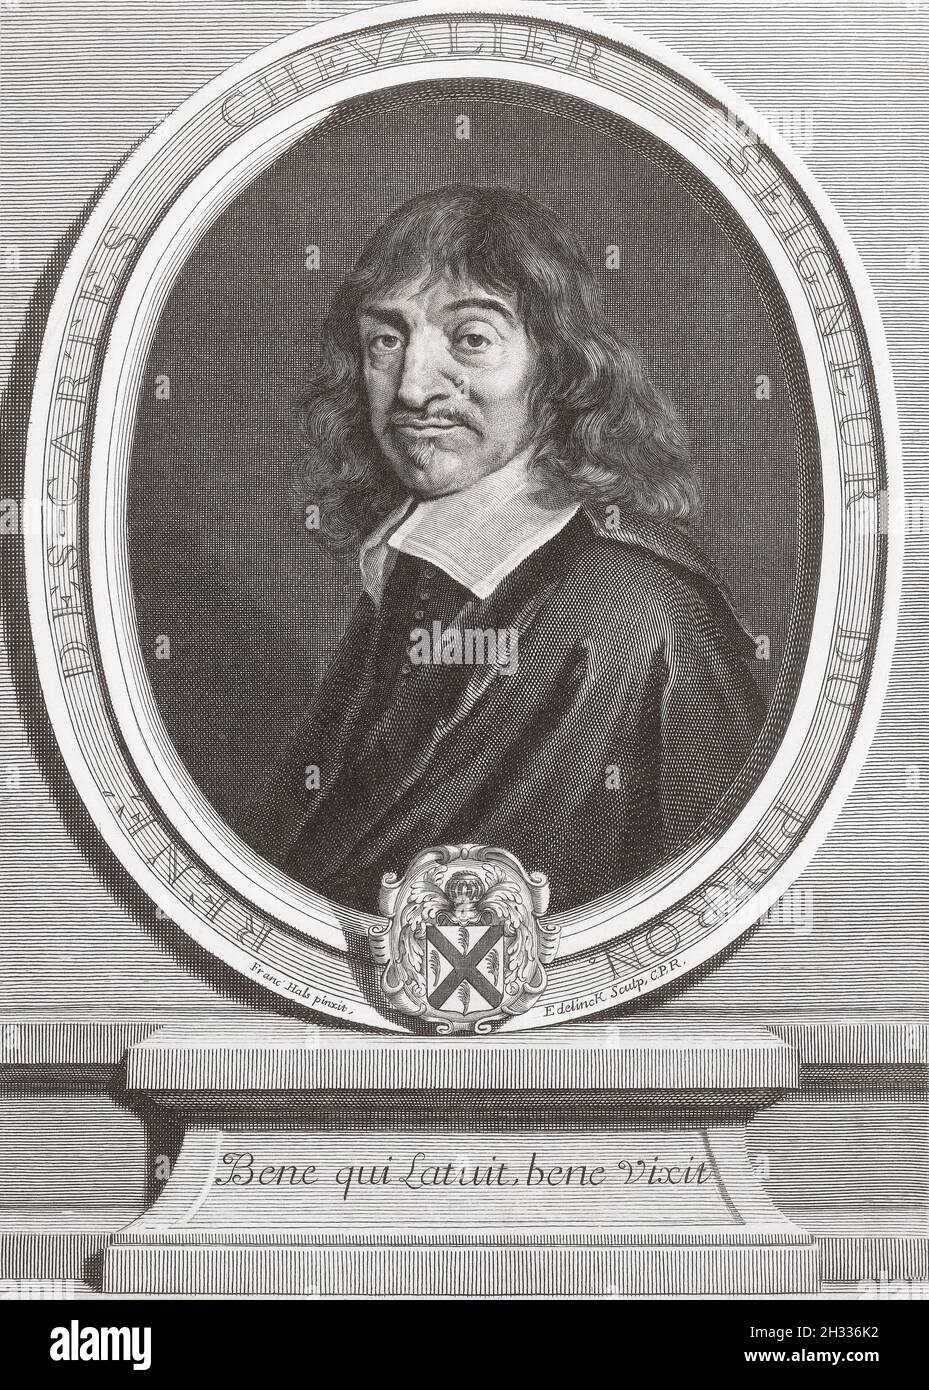 René Descartes, 1596 – 1650. Französischer Philosoph, Mathematiker und Wissenschaftler. Das Zitat im Rahmen um sein Porträt stammt aus Ovids Tristia. Bene qui latuit, Bene vixit, übersetzt als jemand, der gut lebt, unbemerkt lebt. Nach dem Gemälde von Frans Hals. Stockfoto